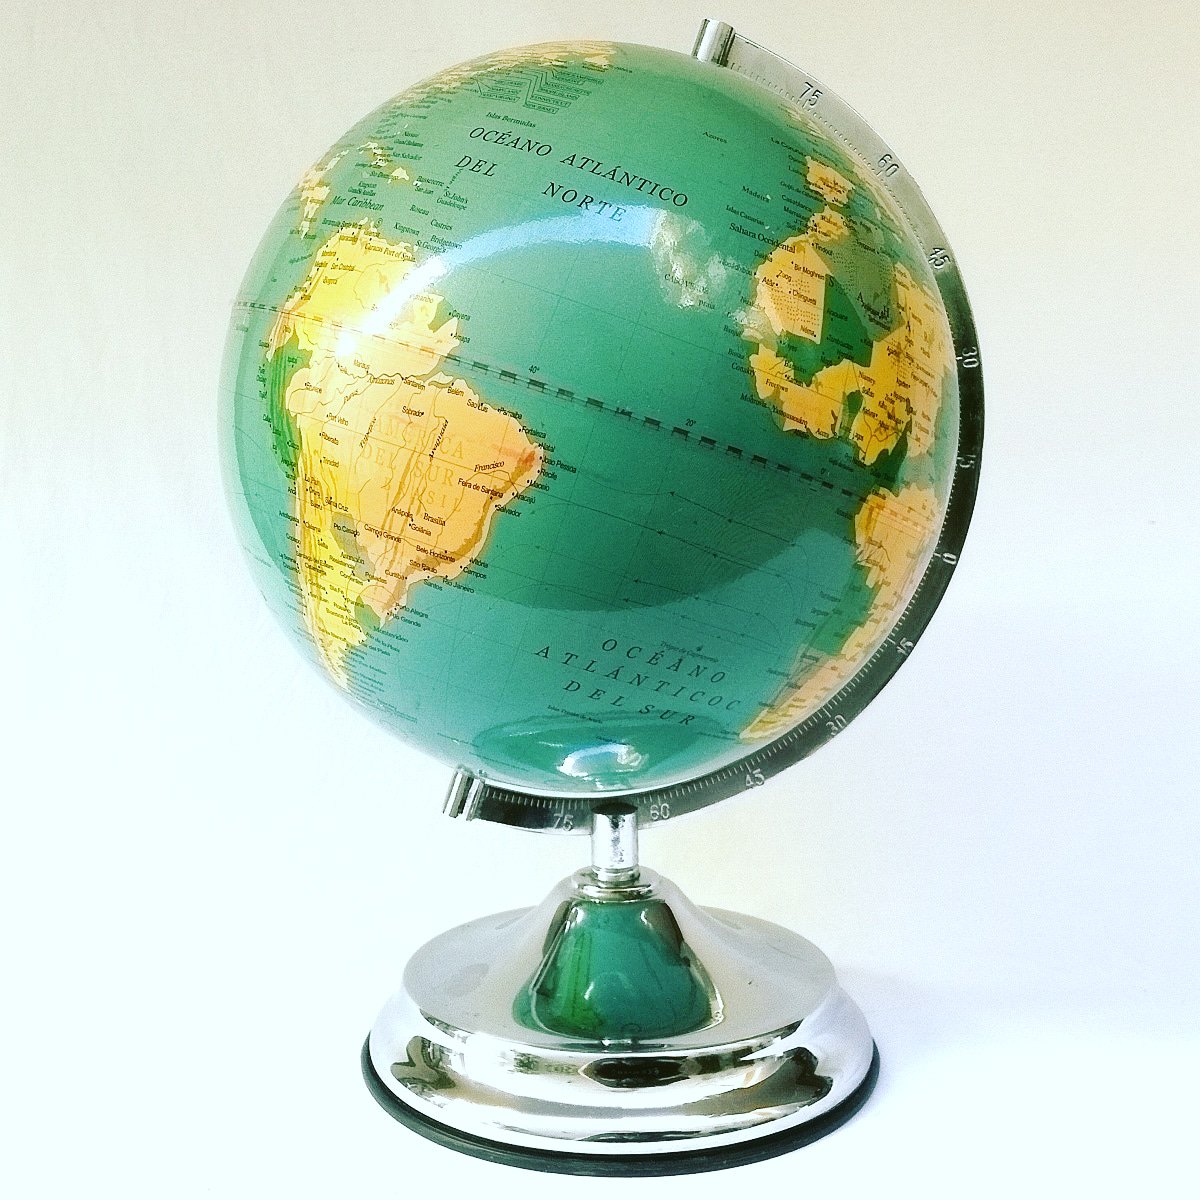 Bola del mundo #vintage. +Info: lavintageria.es
#globosterraqueos #geografía #viajes #agenciasdeviajes #vintagedecor #vintage #decoraciondeinteriores #decoración #decoration